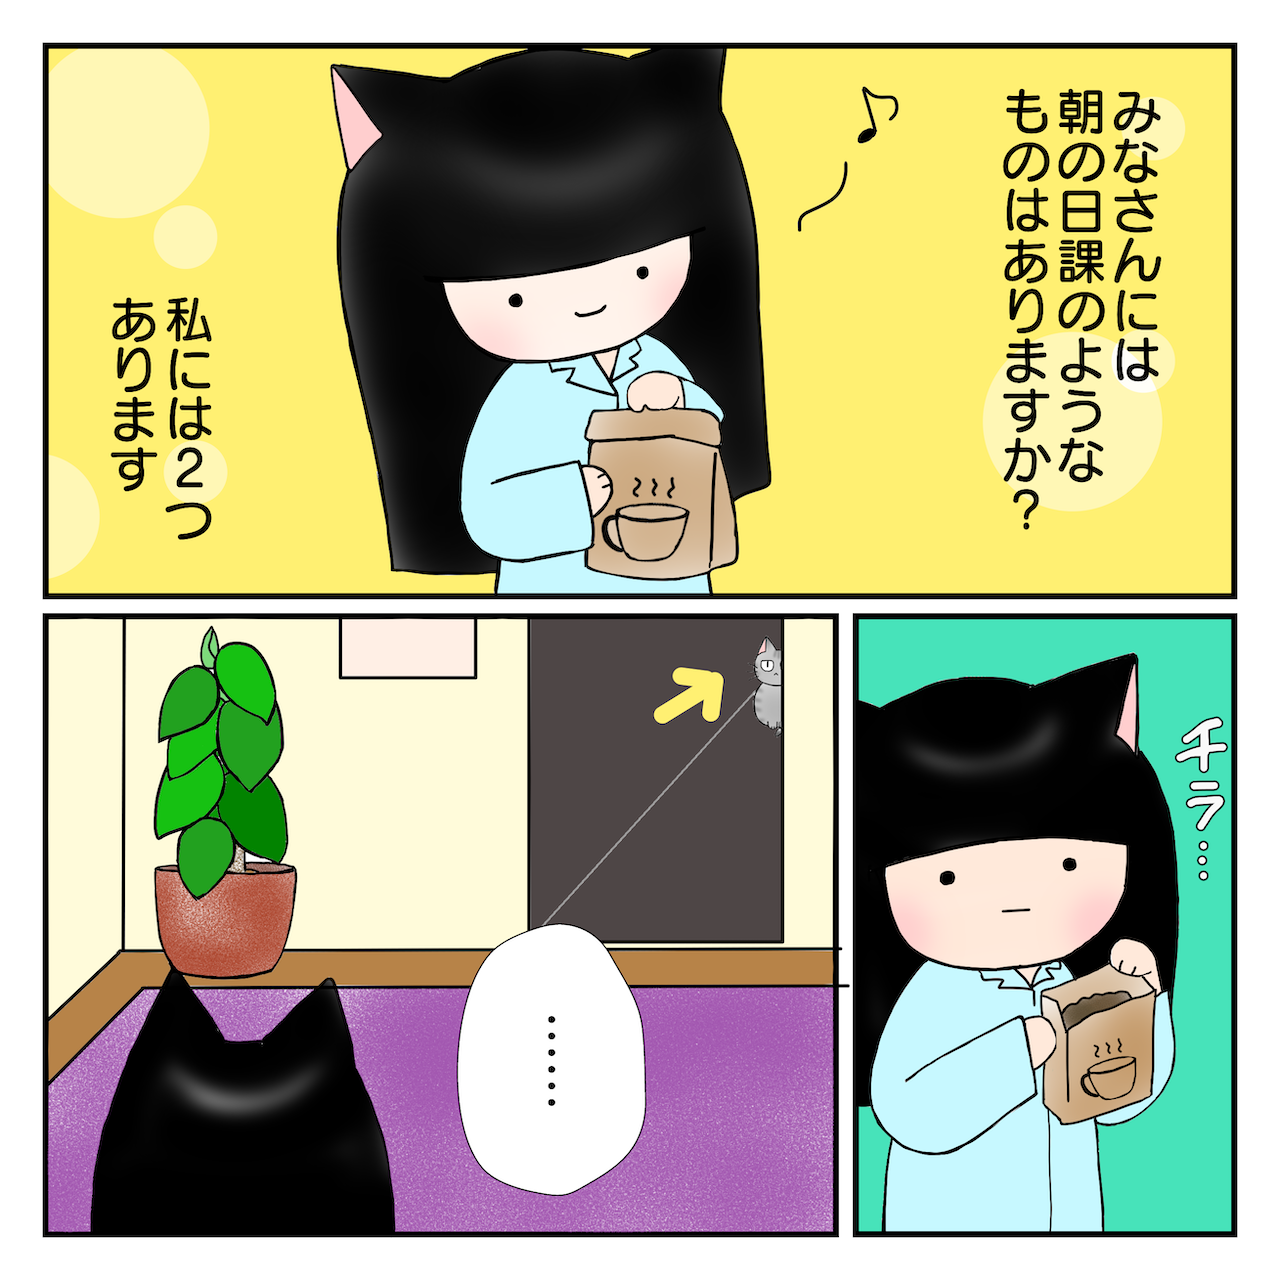 ねこ漫画15_1